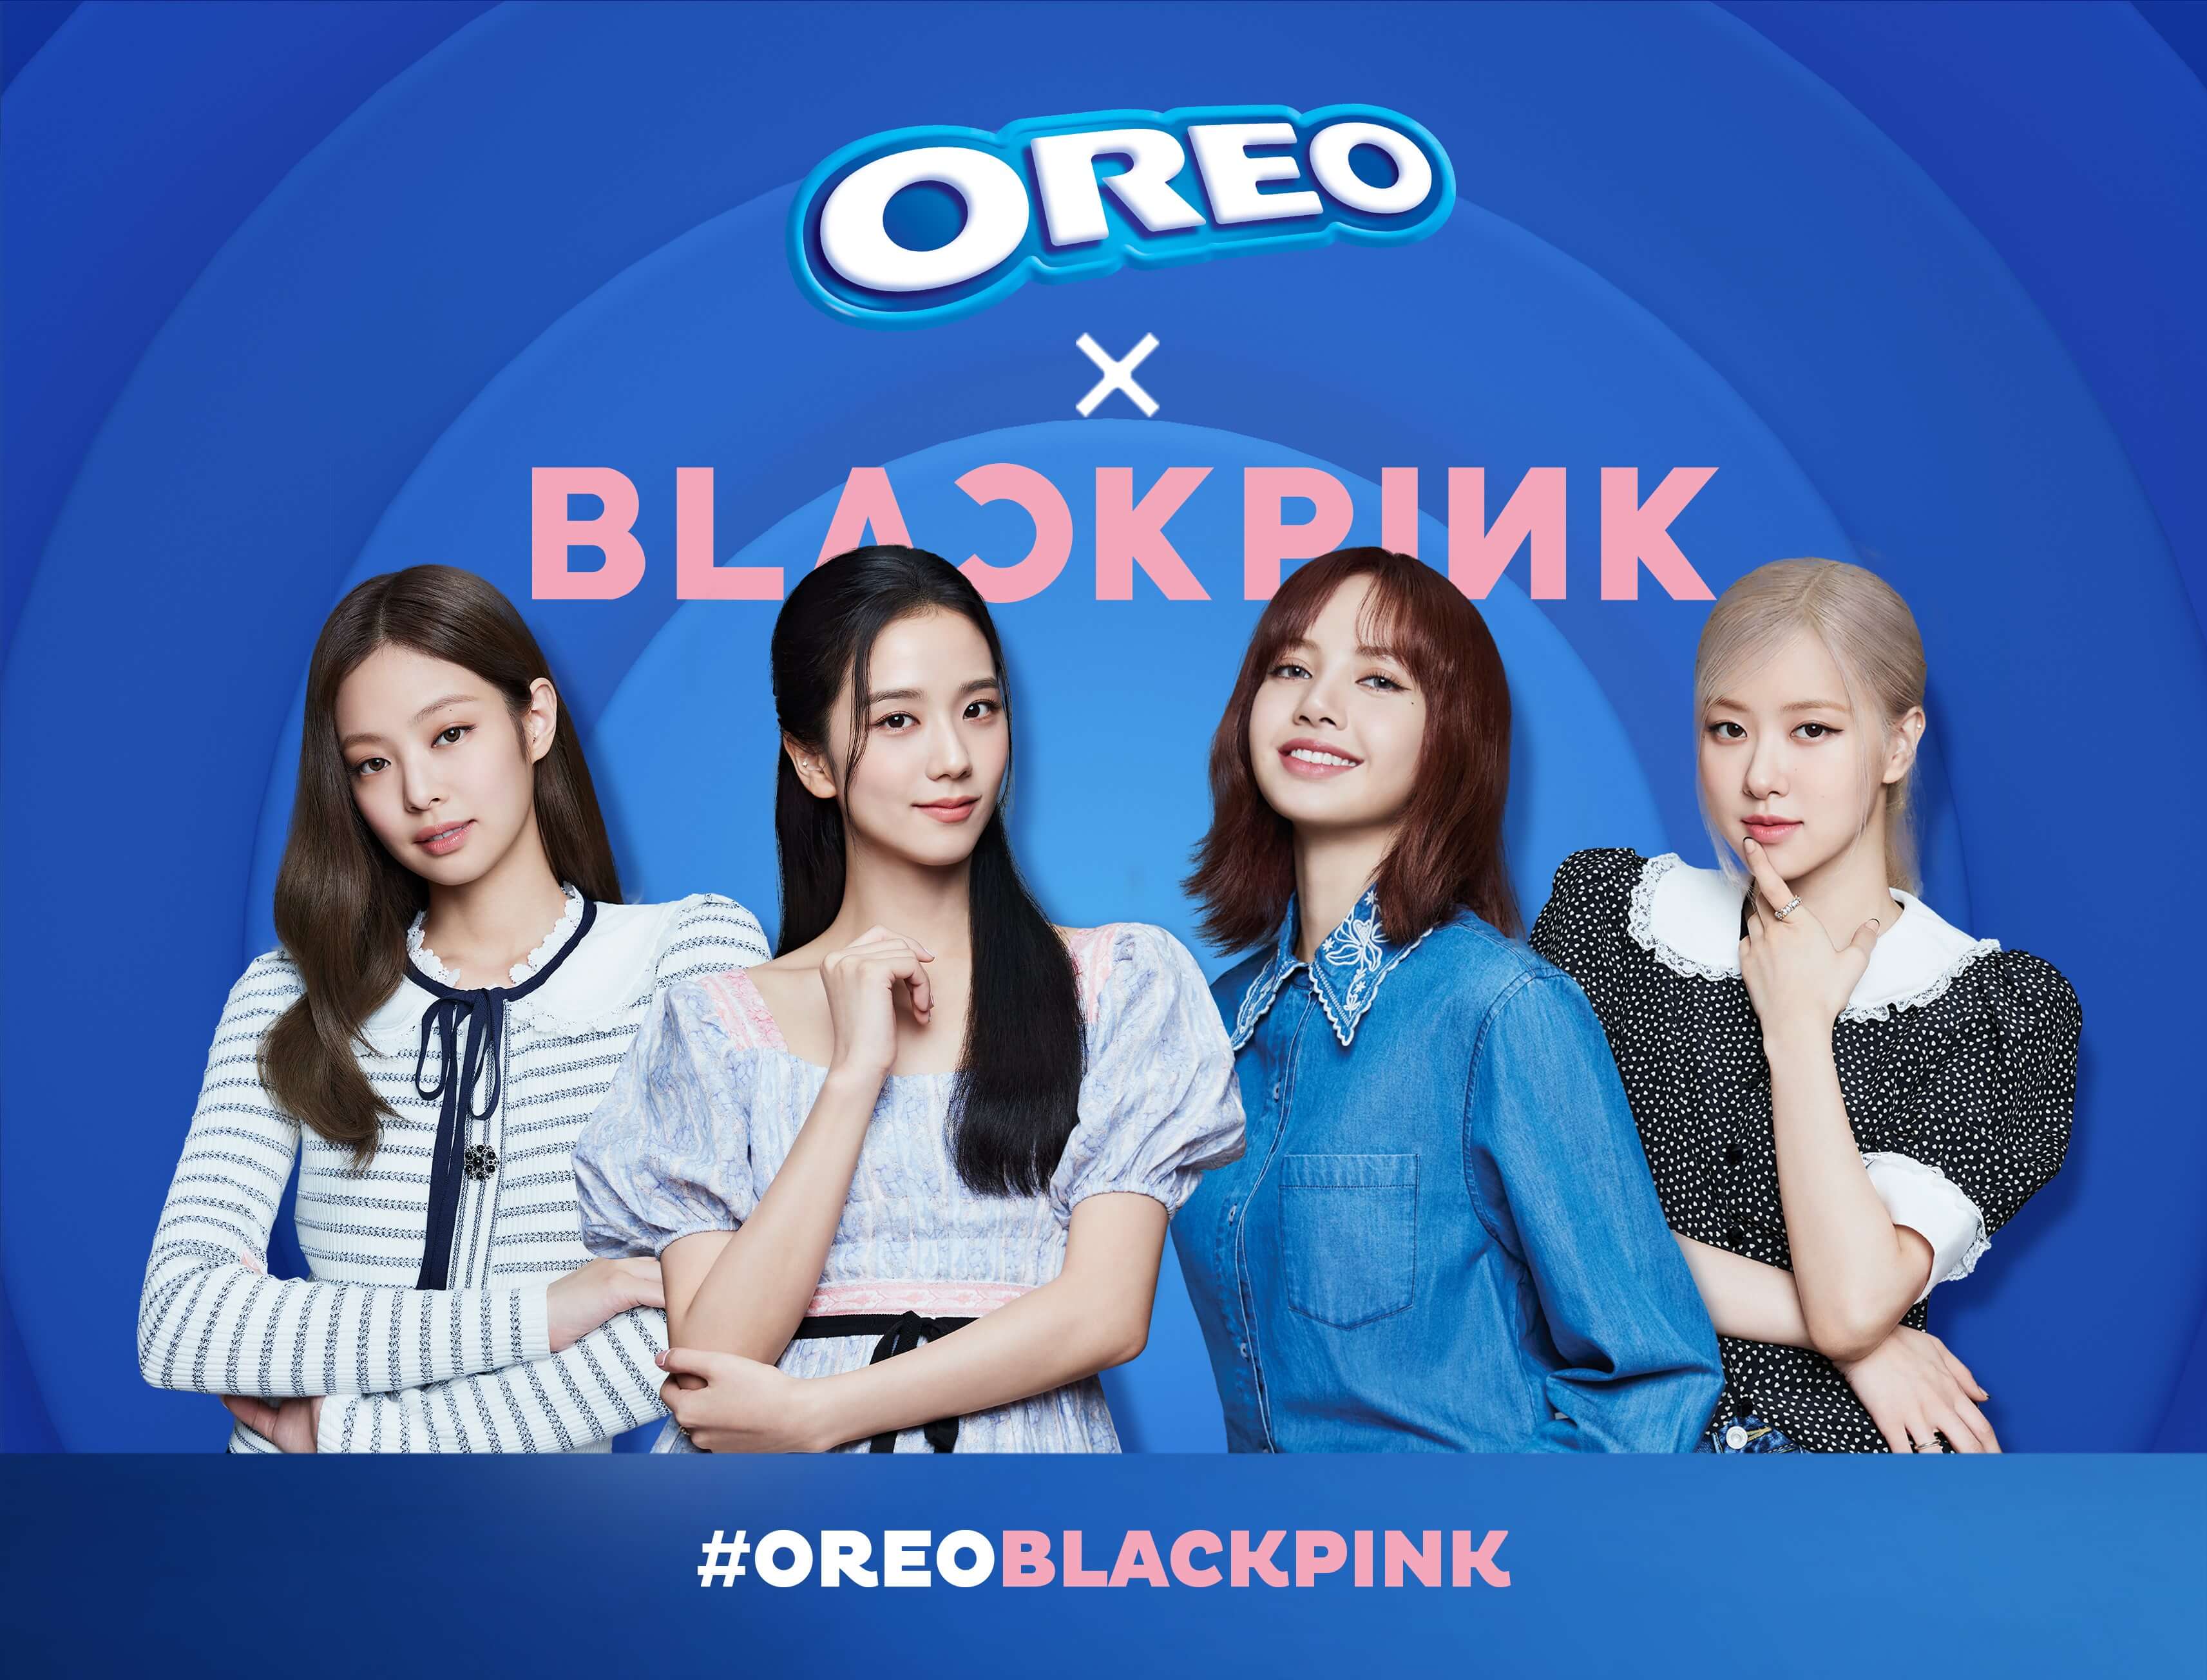 โอรีโอเปิดตัวแคมเปญใหญ่แห่งปี OREO x BLACKPINK  ชวนบลิงค์ไทยชมหนังโฆษณาเป็นกลุ่มแรกในโลก